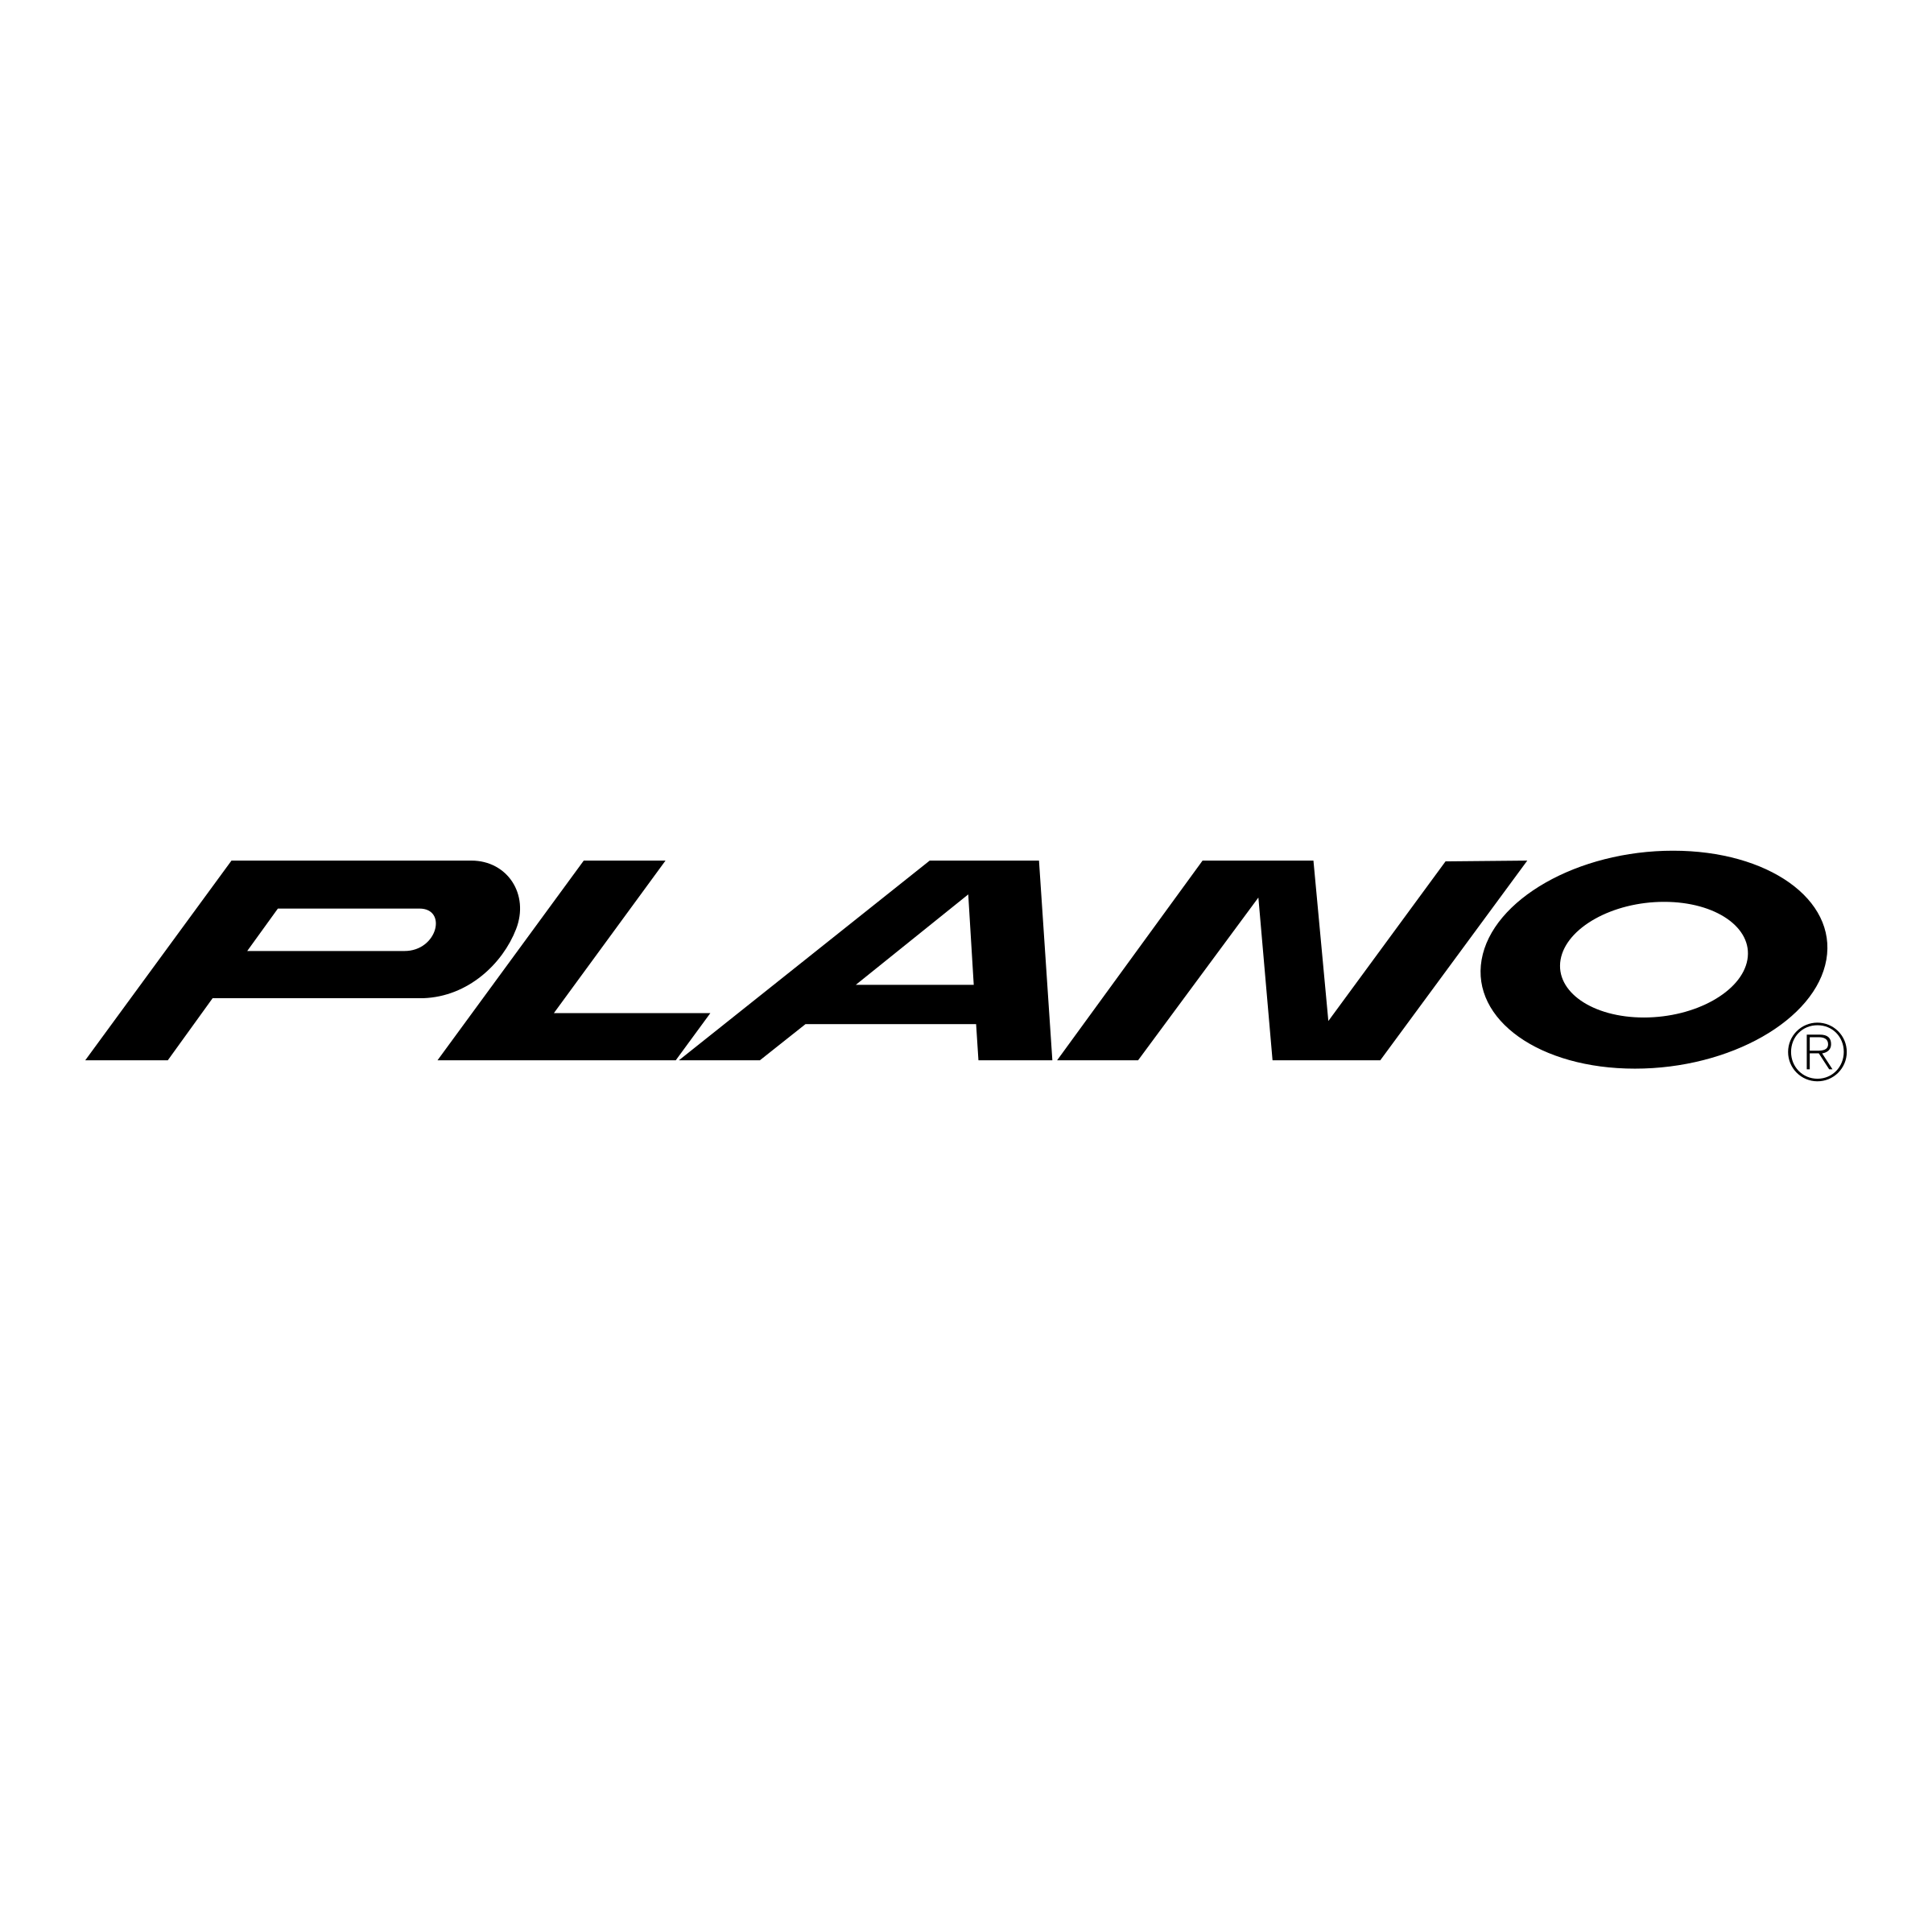 Plano Logo - Plano Logo PNG Transparent & SVG Vector - Freebie Supply